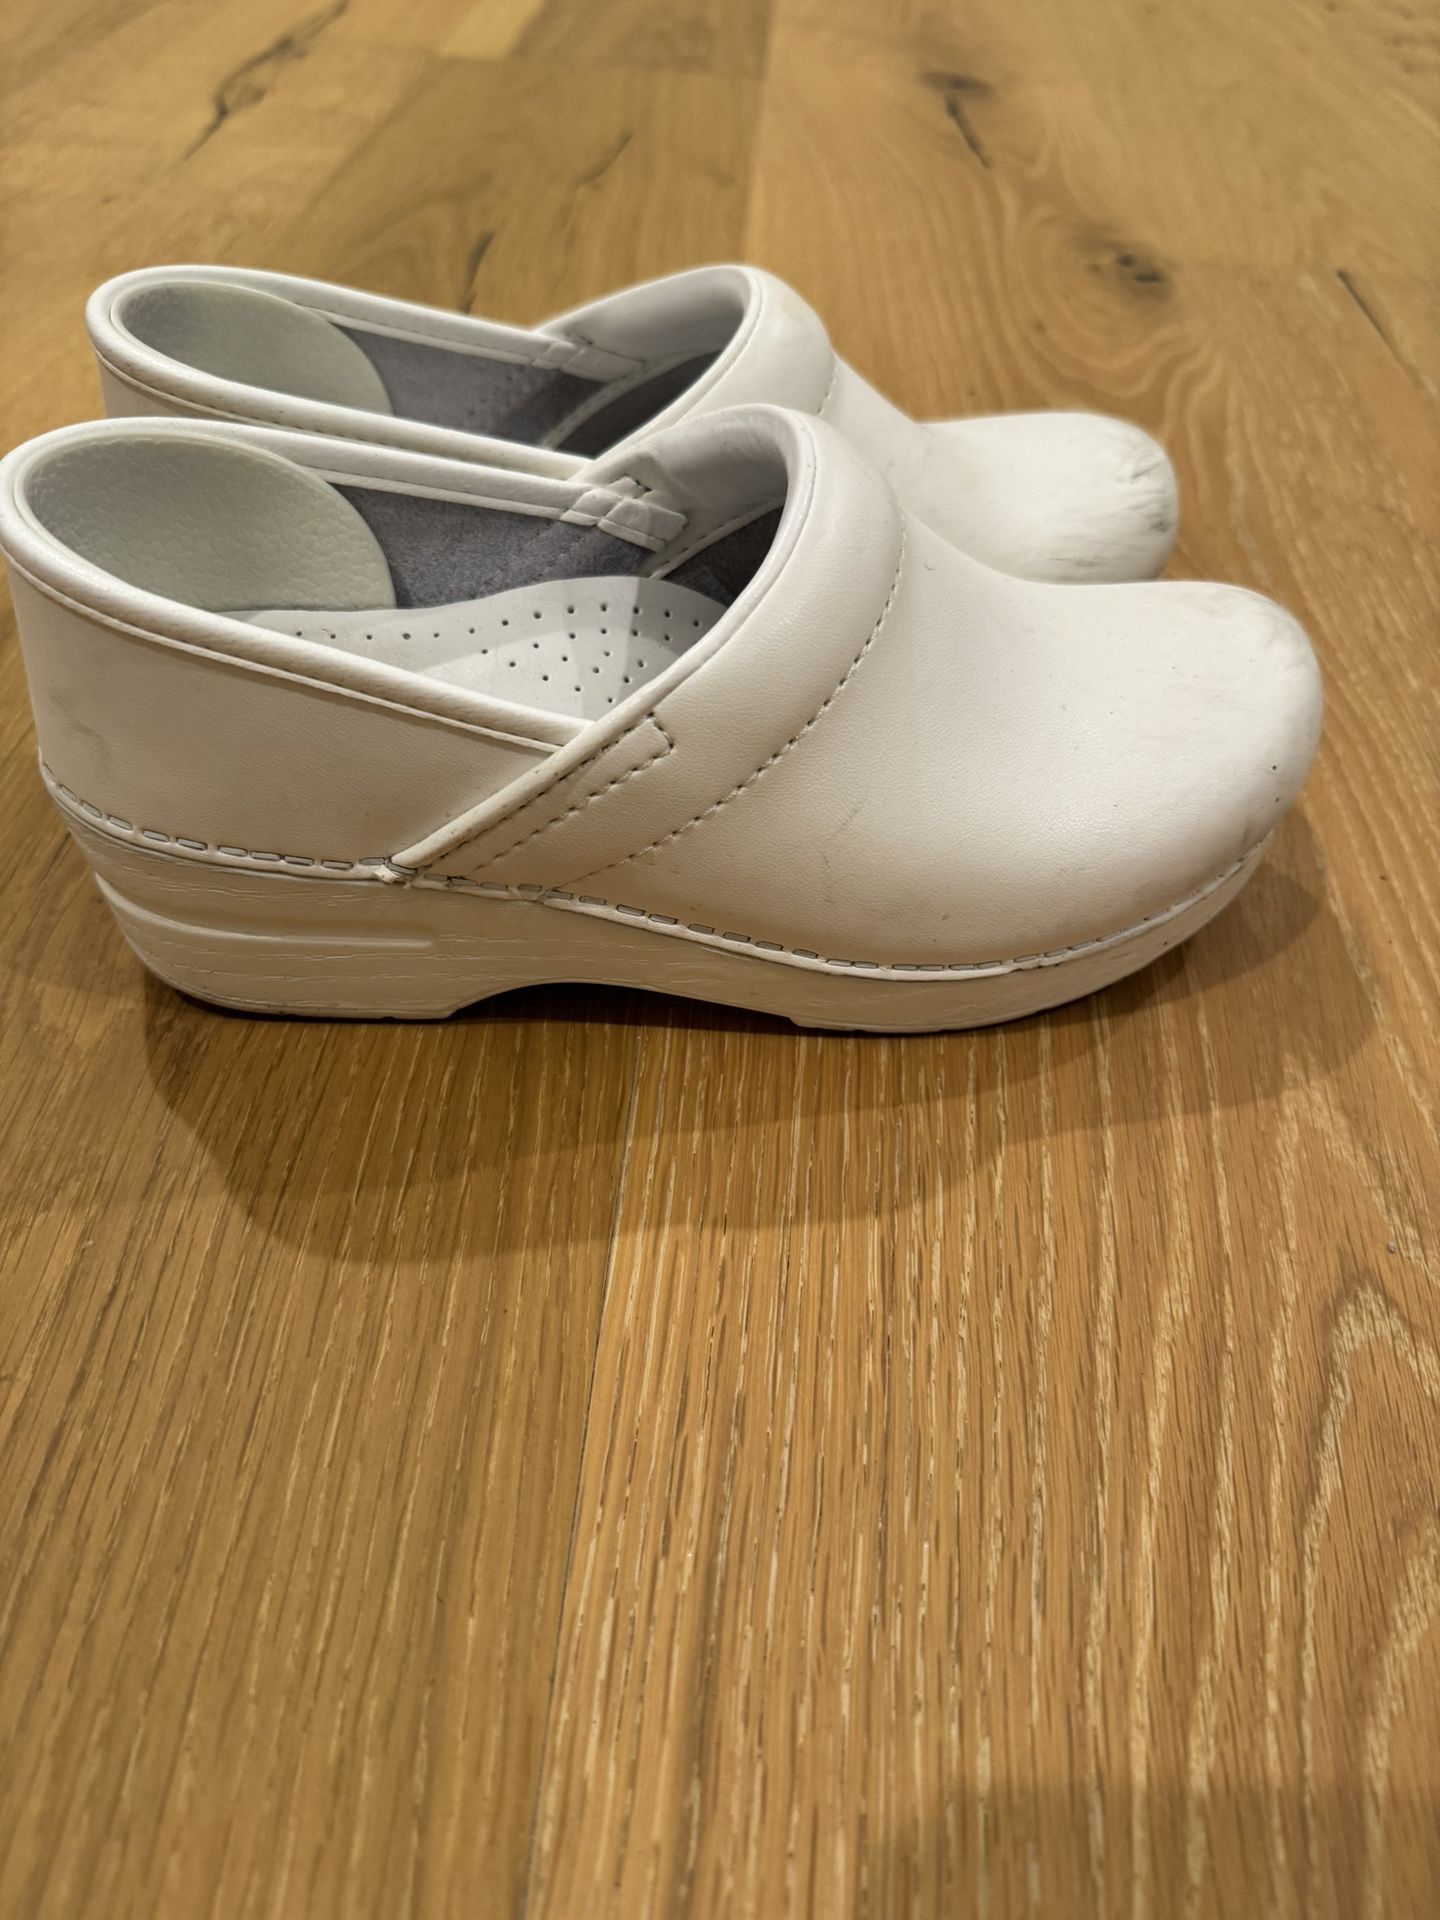 White Dansko Nursing Shoes